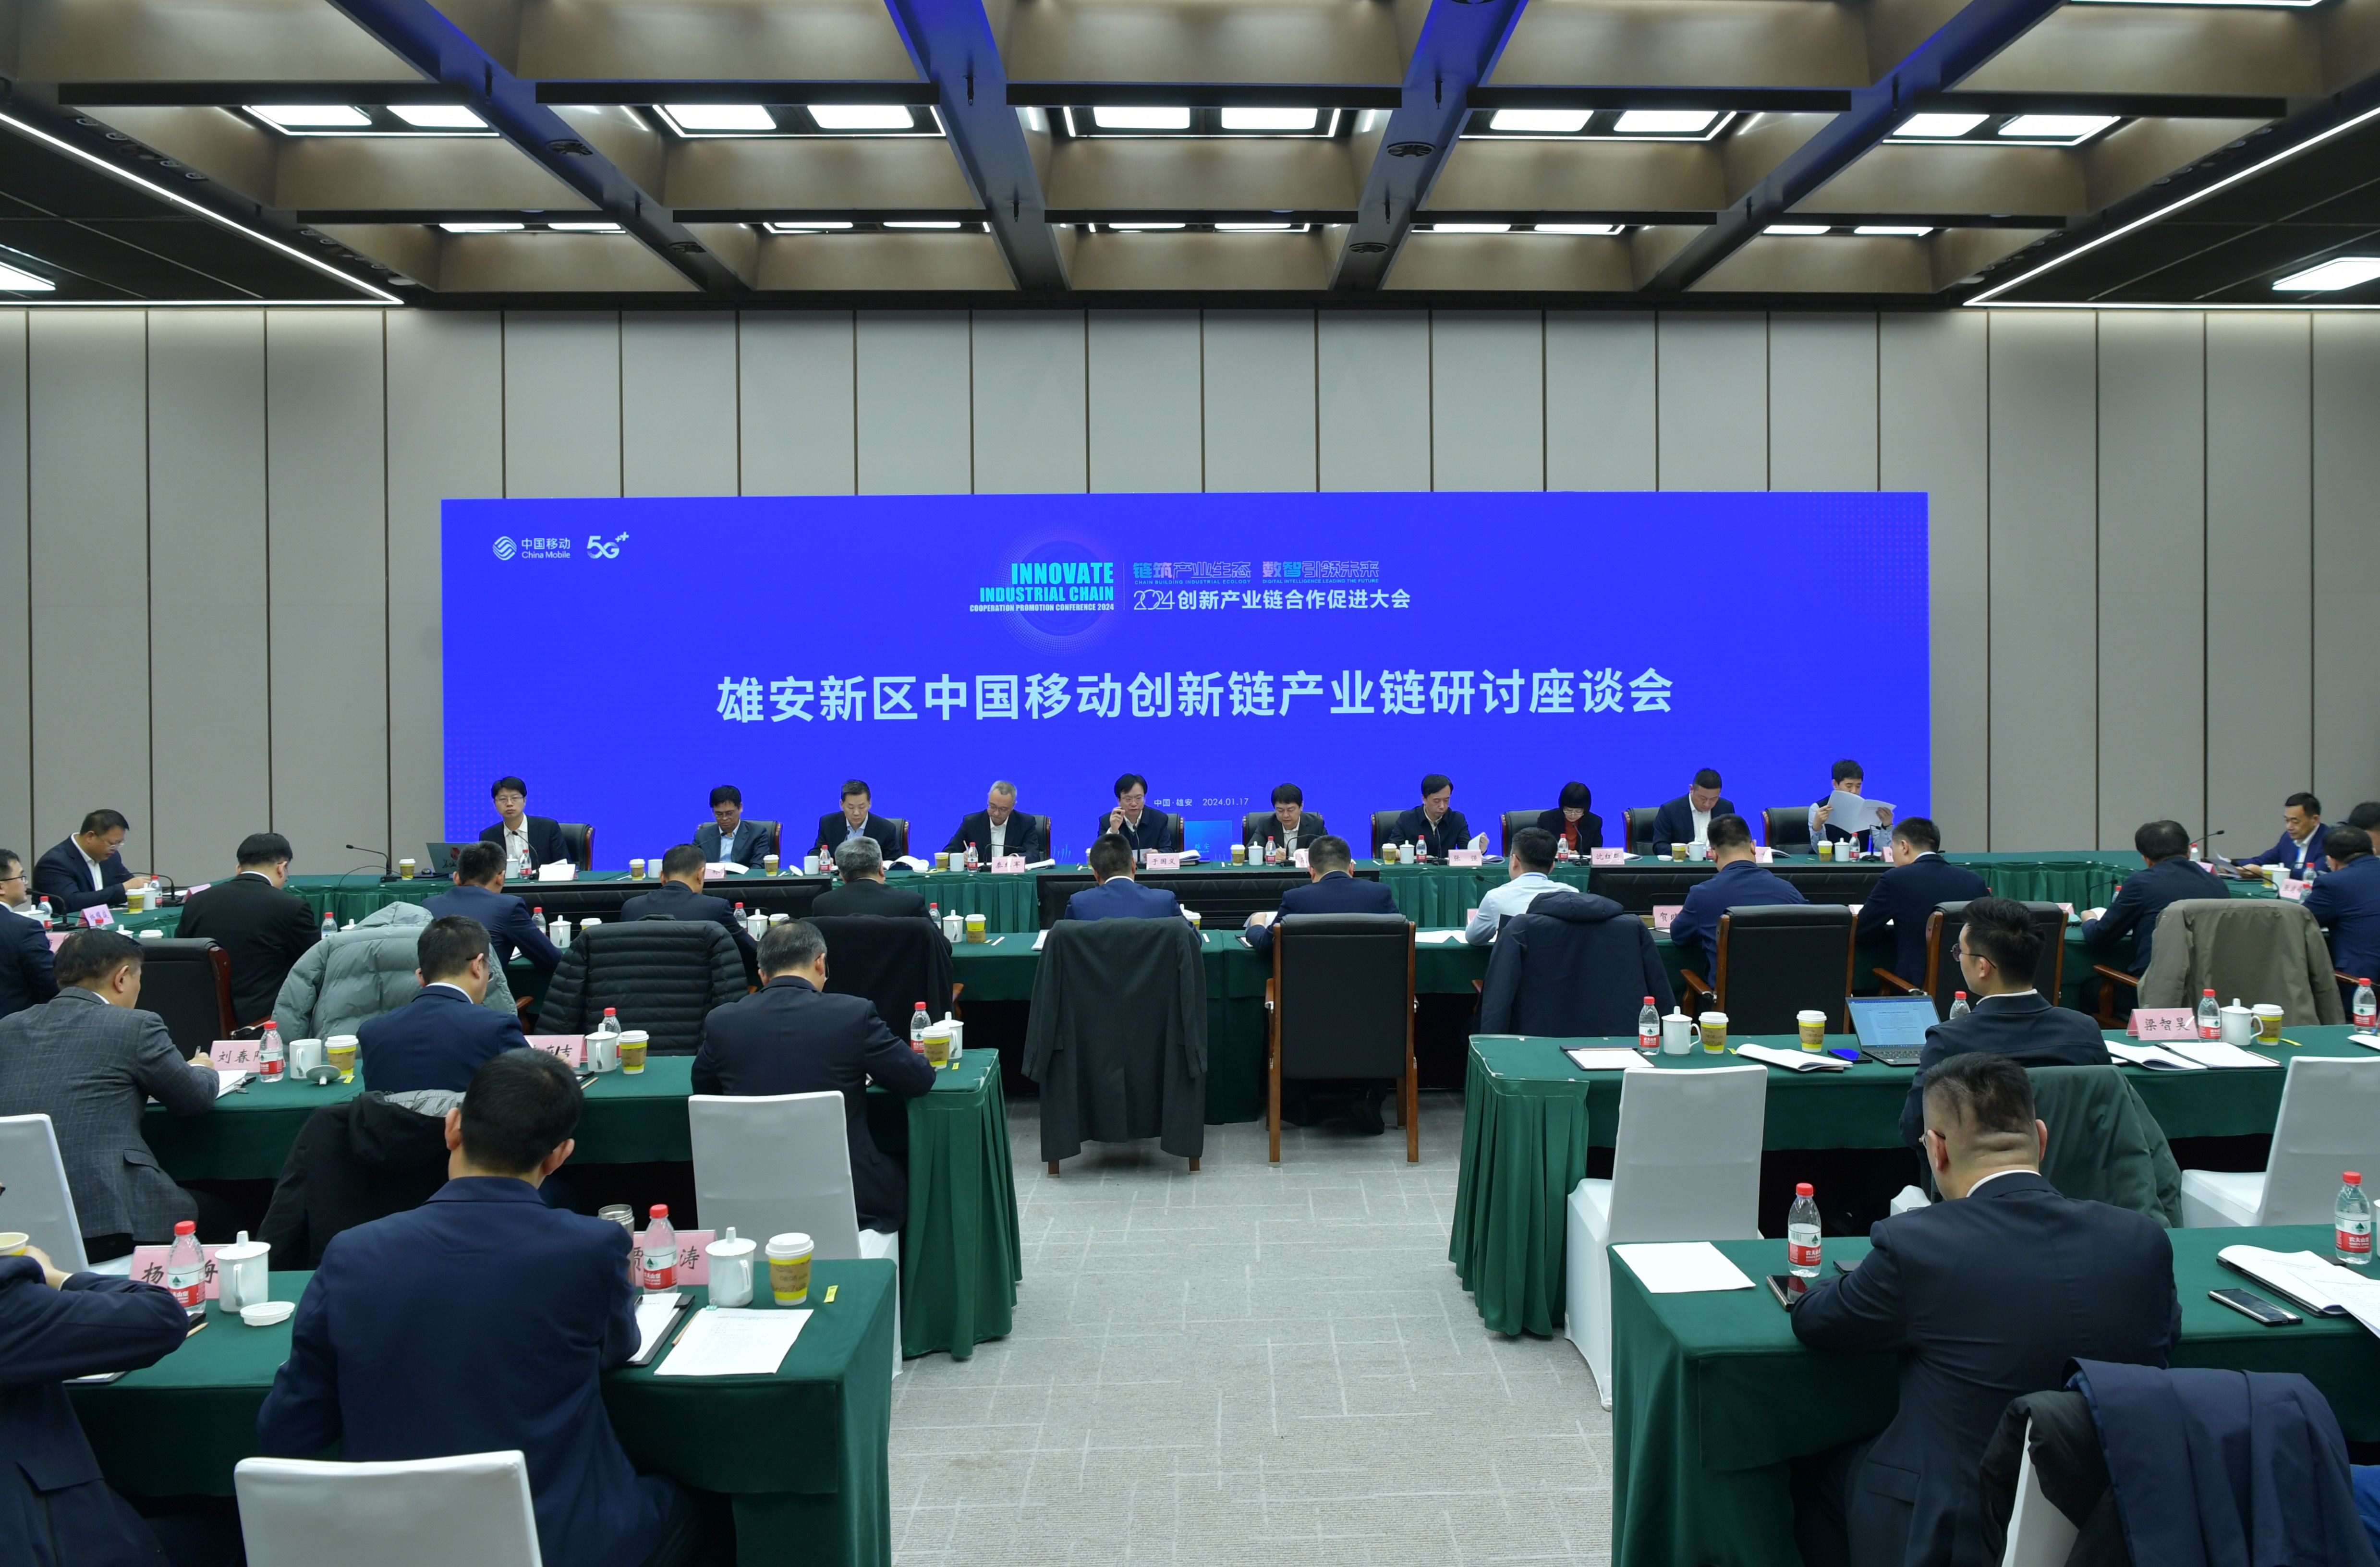 “聚要素、落产业、建生态” 雄安新区中国移动创新链产业链研讨座谈会举行